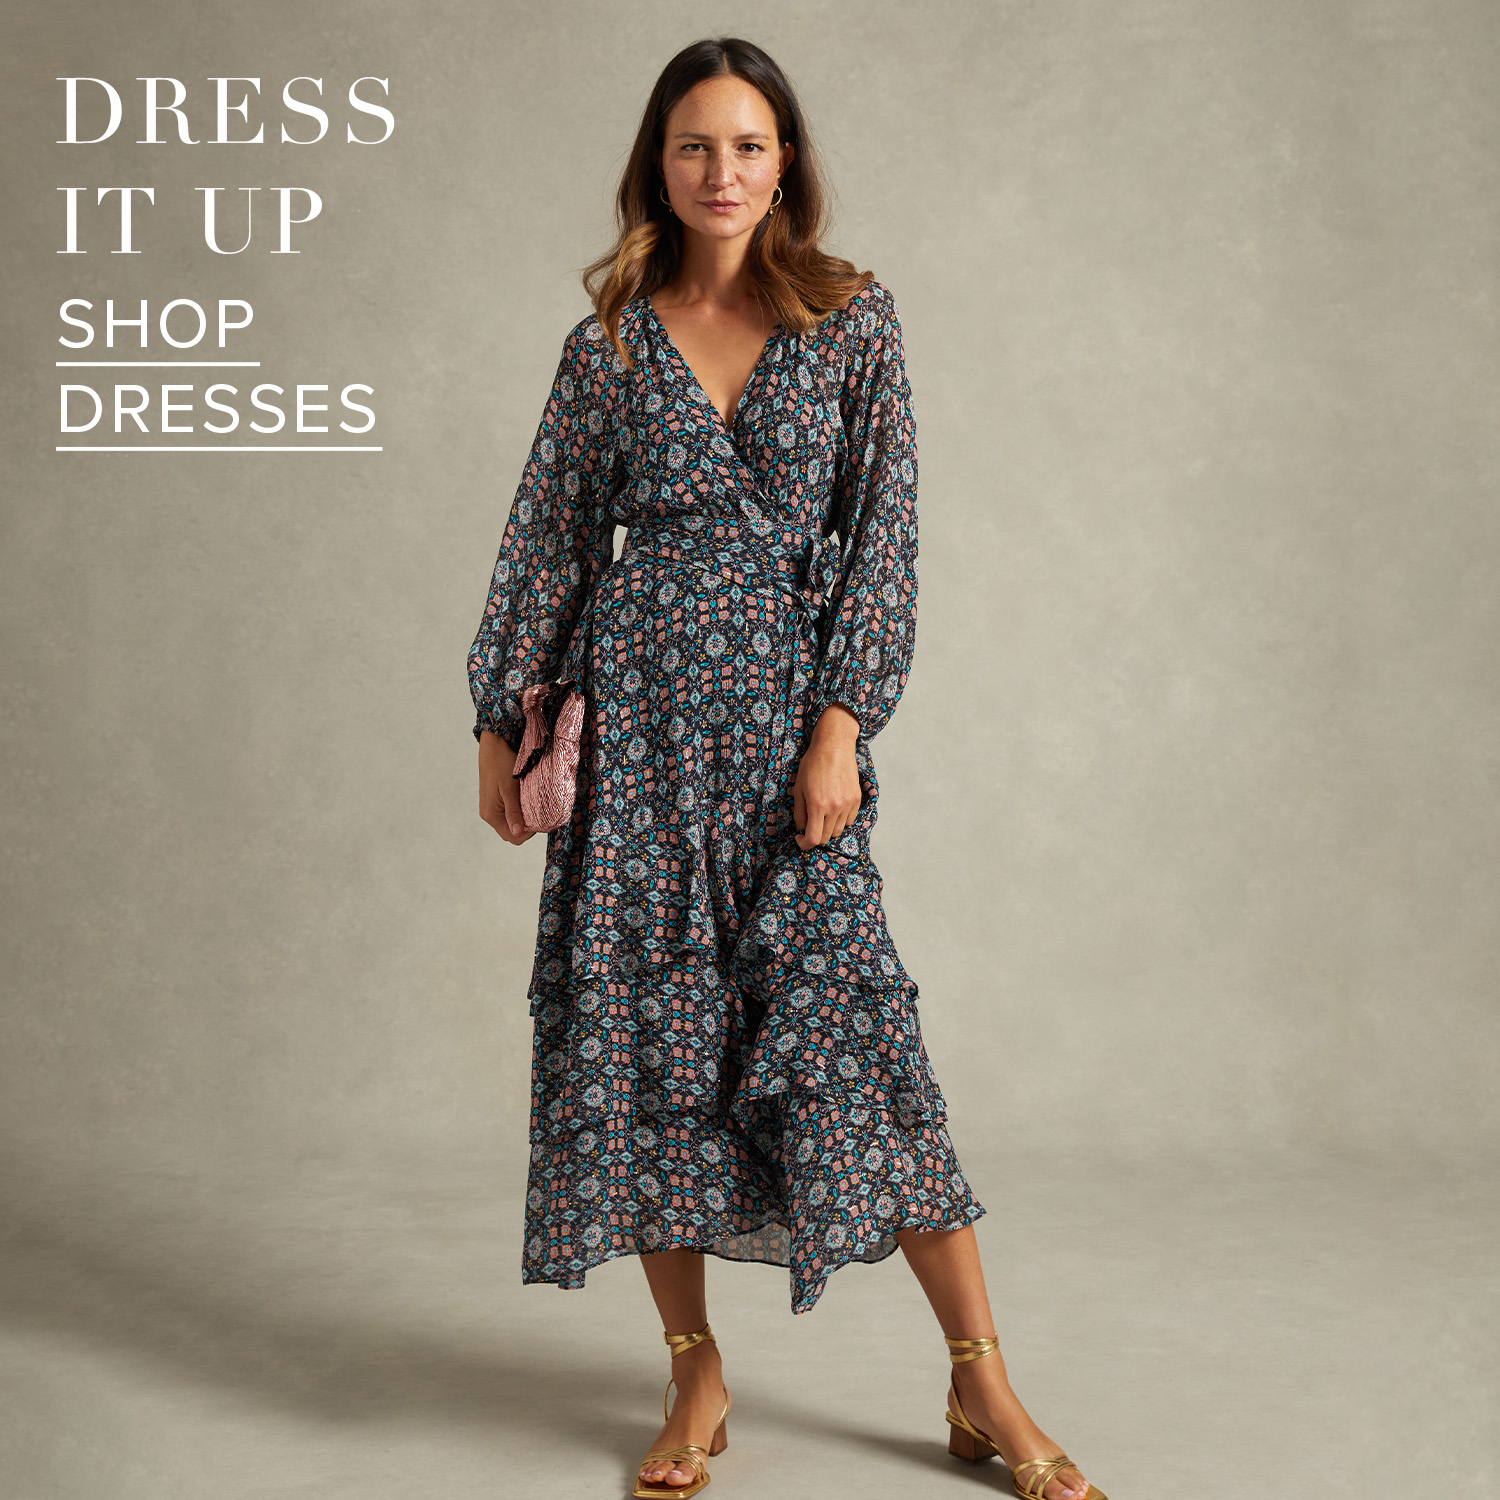 Dress it up, shop dresses.